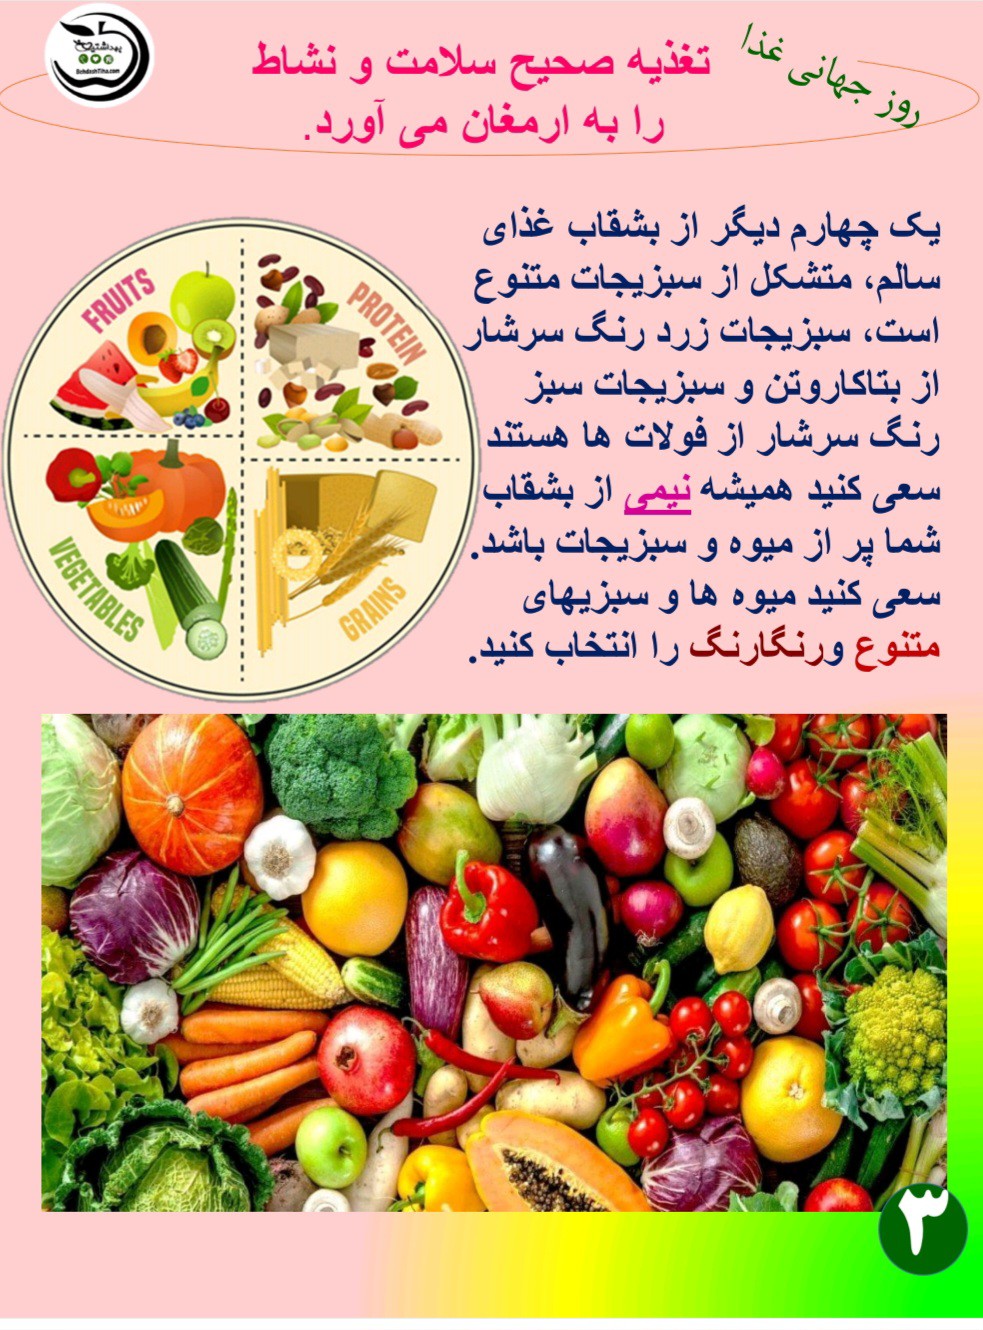 پوسترهای روز جهانی غذا (6)